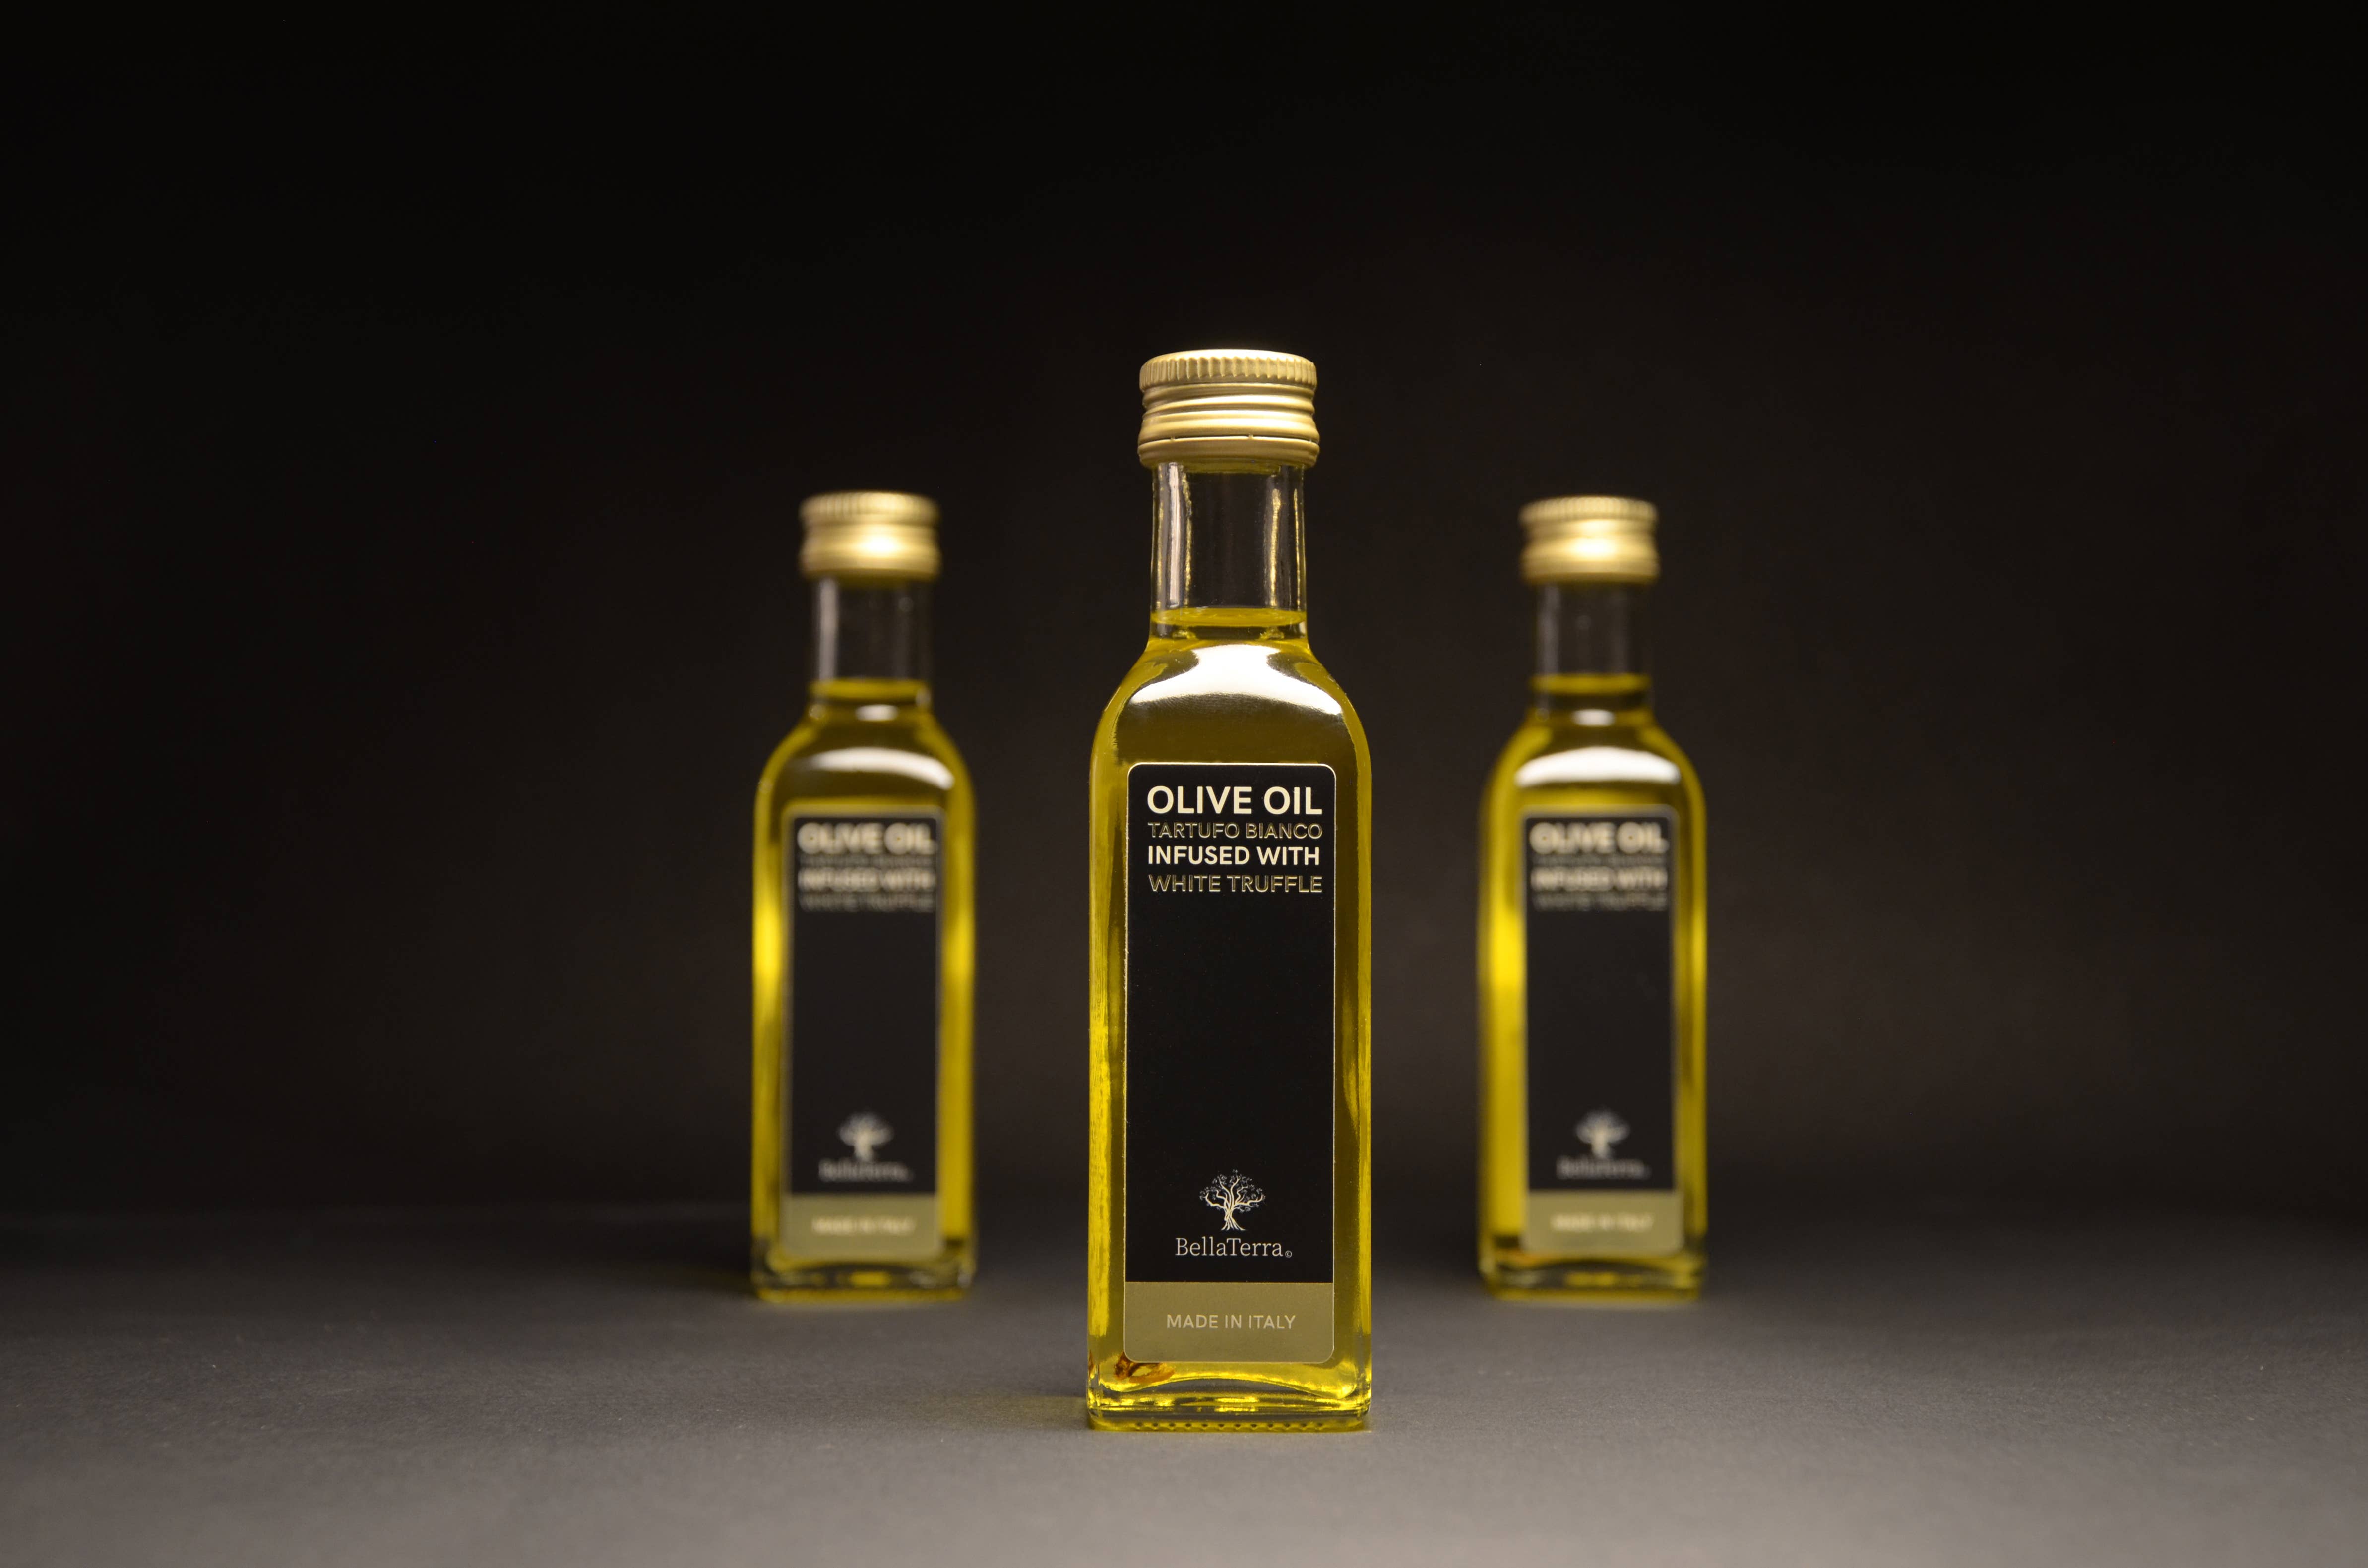 Bouteille Verre – Huile Olive Extra Vierge 0,3% / 250ml – La Coopérative du  Soleil